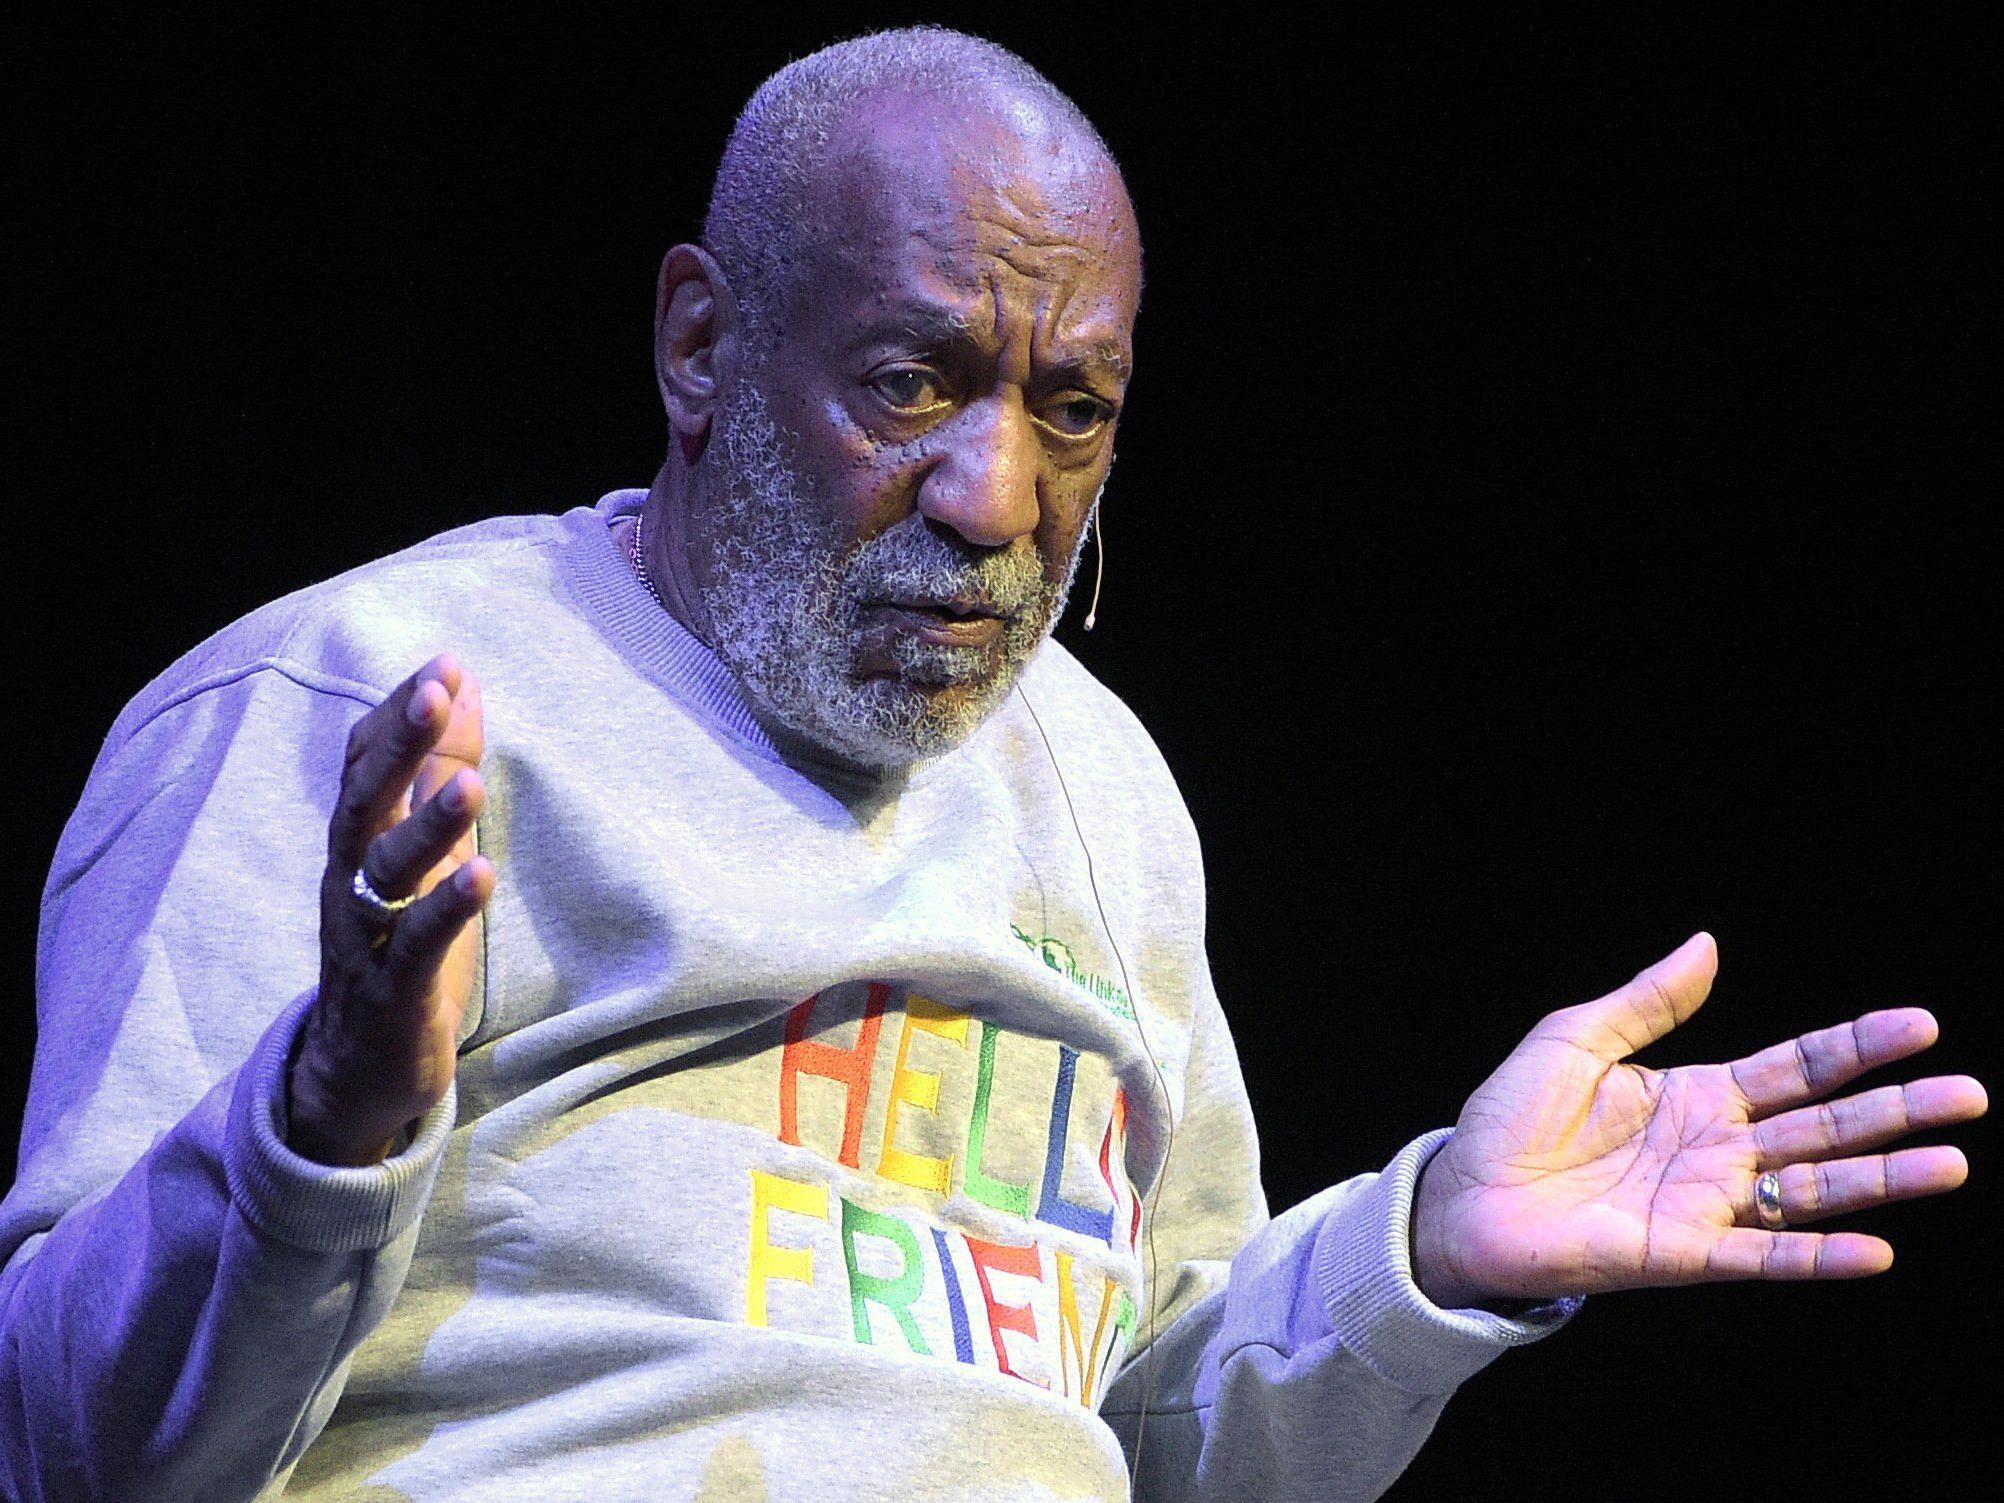 Auch ein ehemaliges Topmodel erhebt nun Vorwürfe gegen TV-Star Bill Cosby.